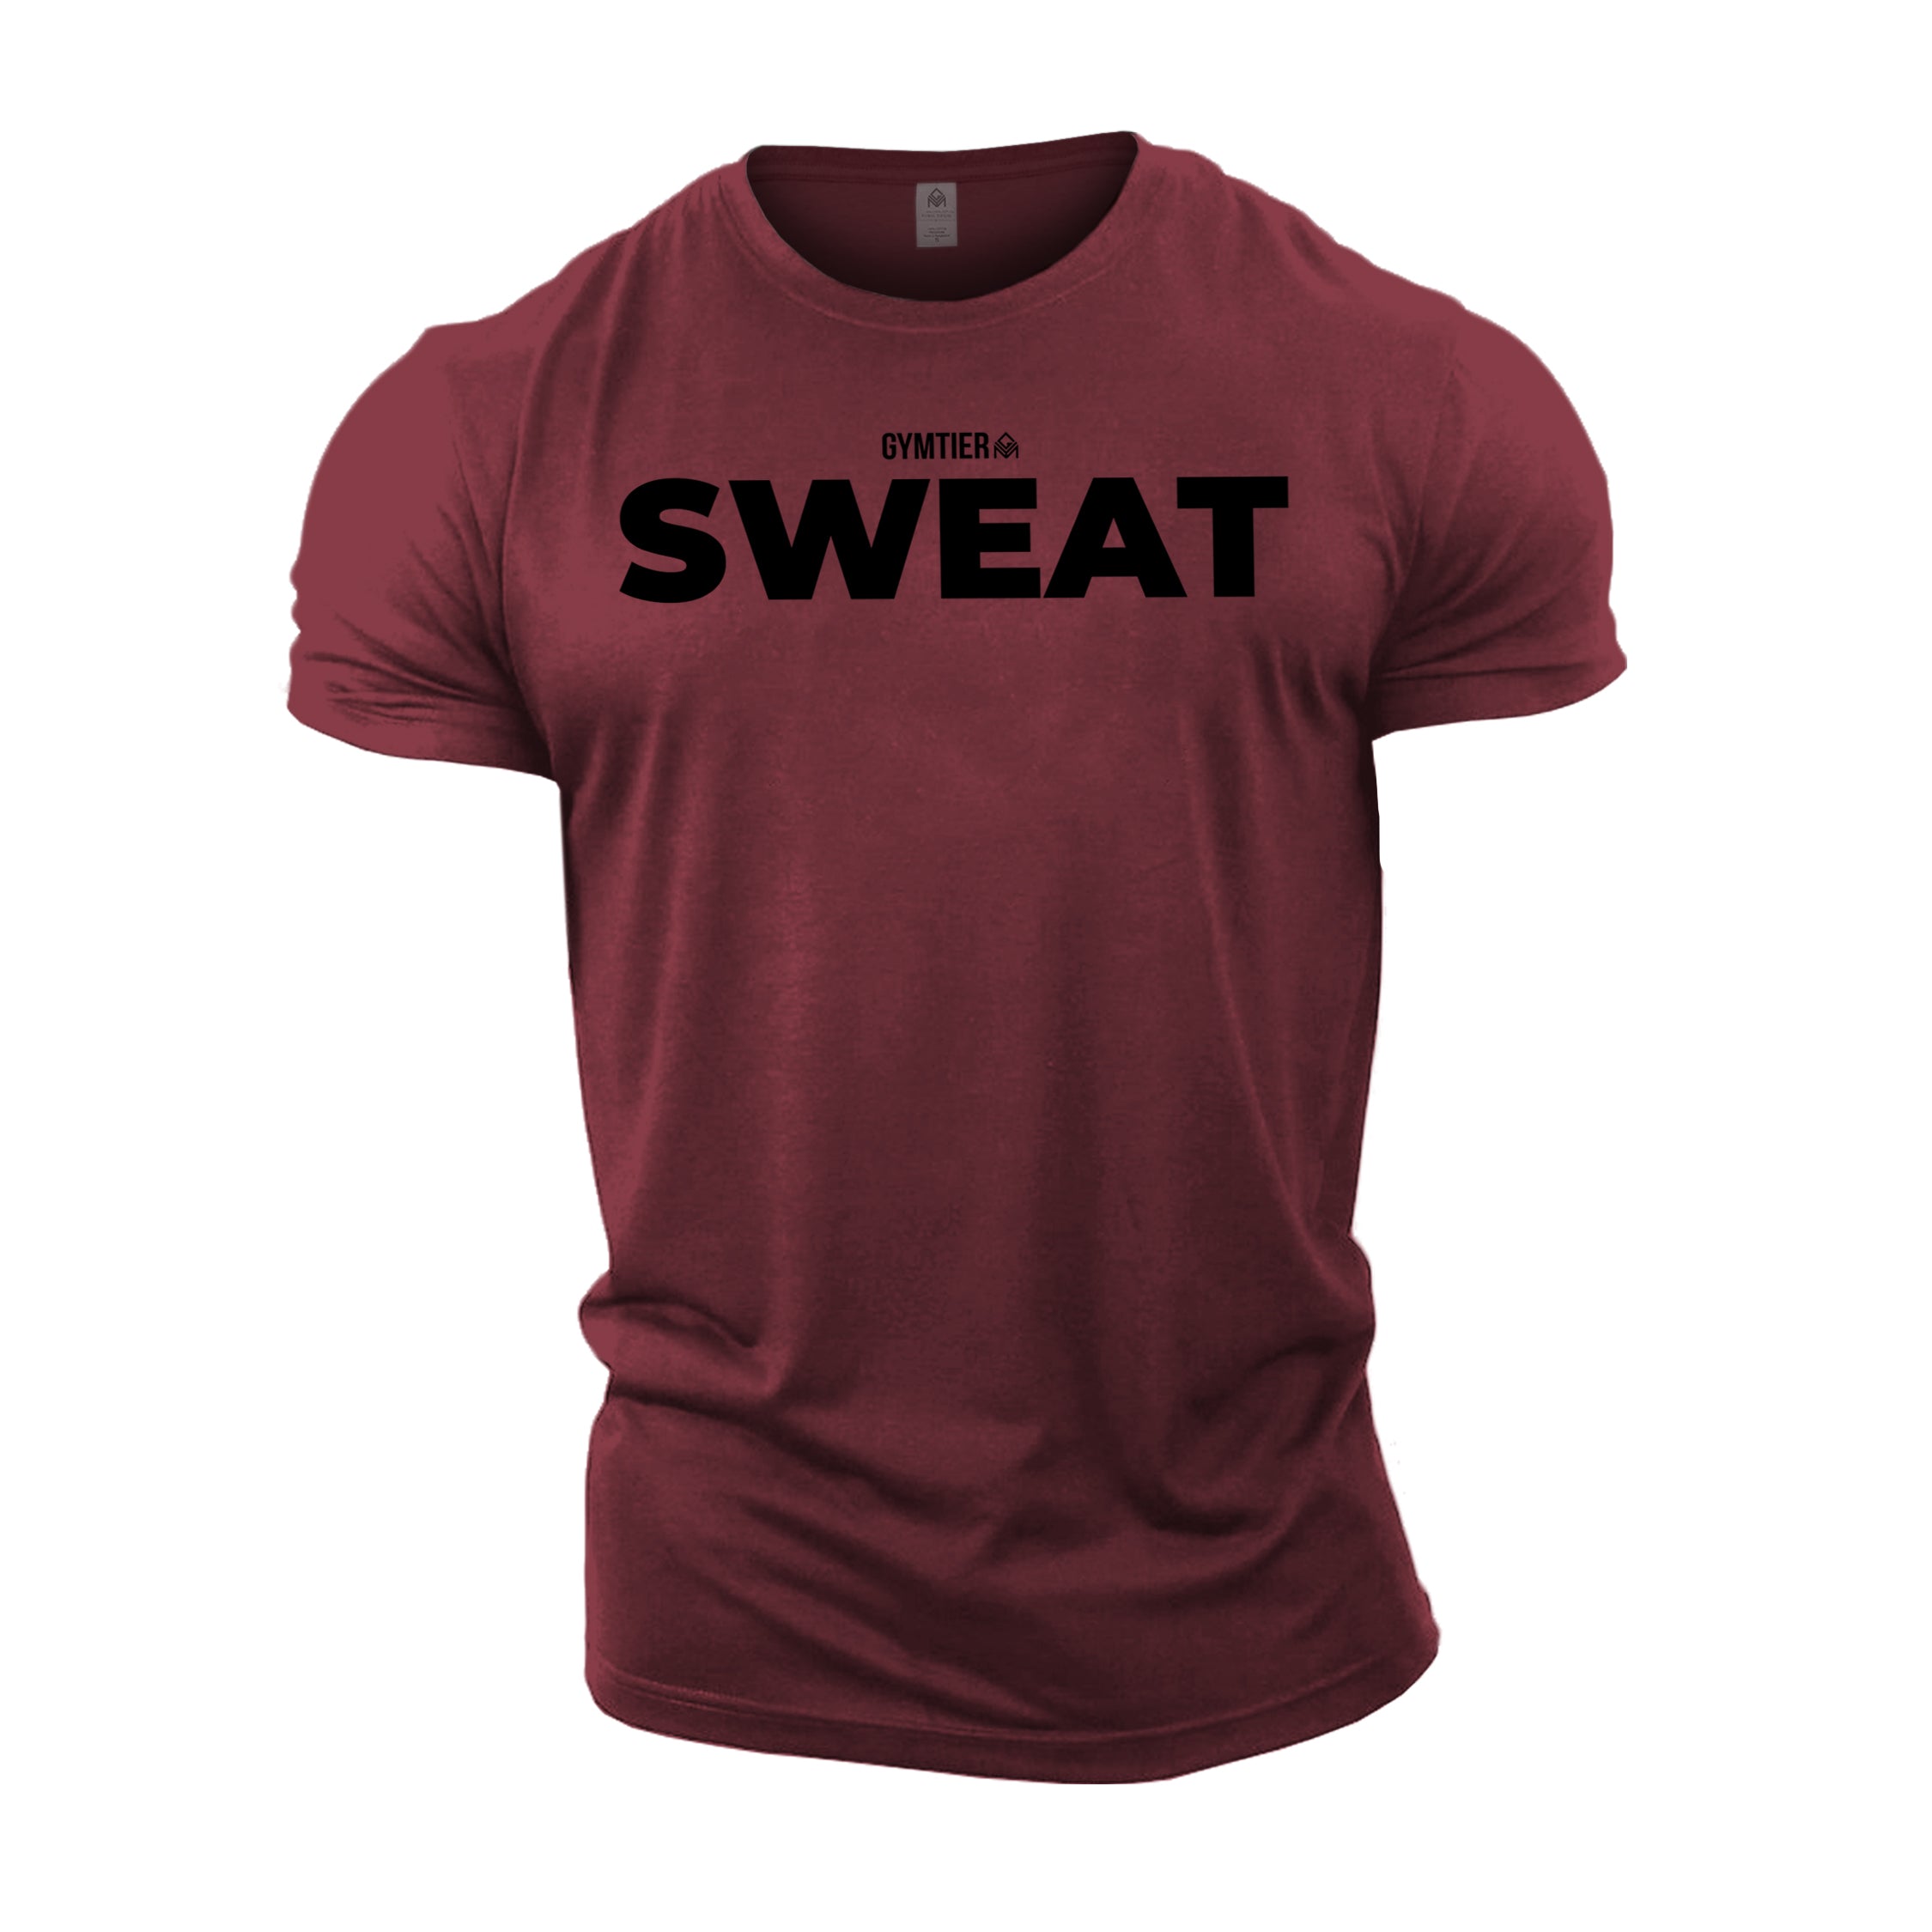 GYMTIER Sweat T-Shirt